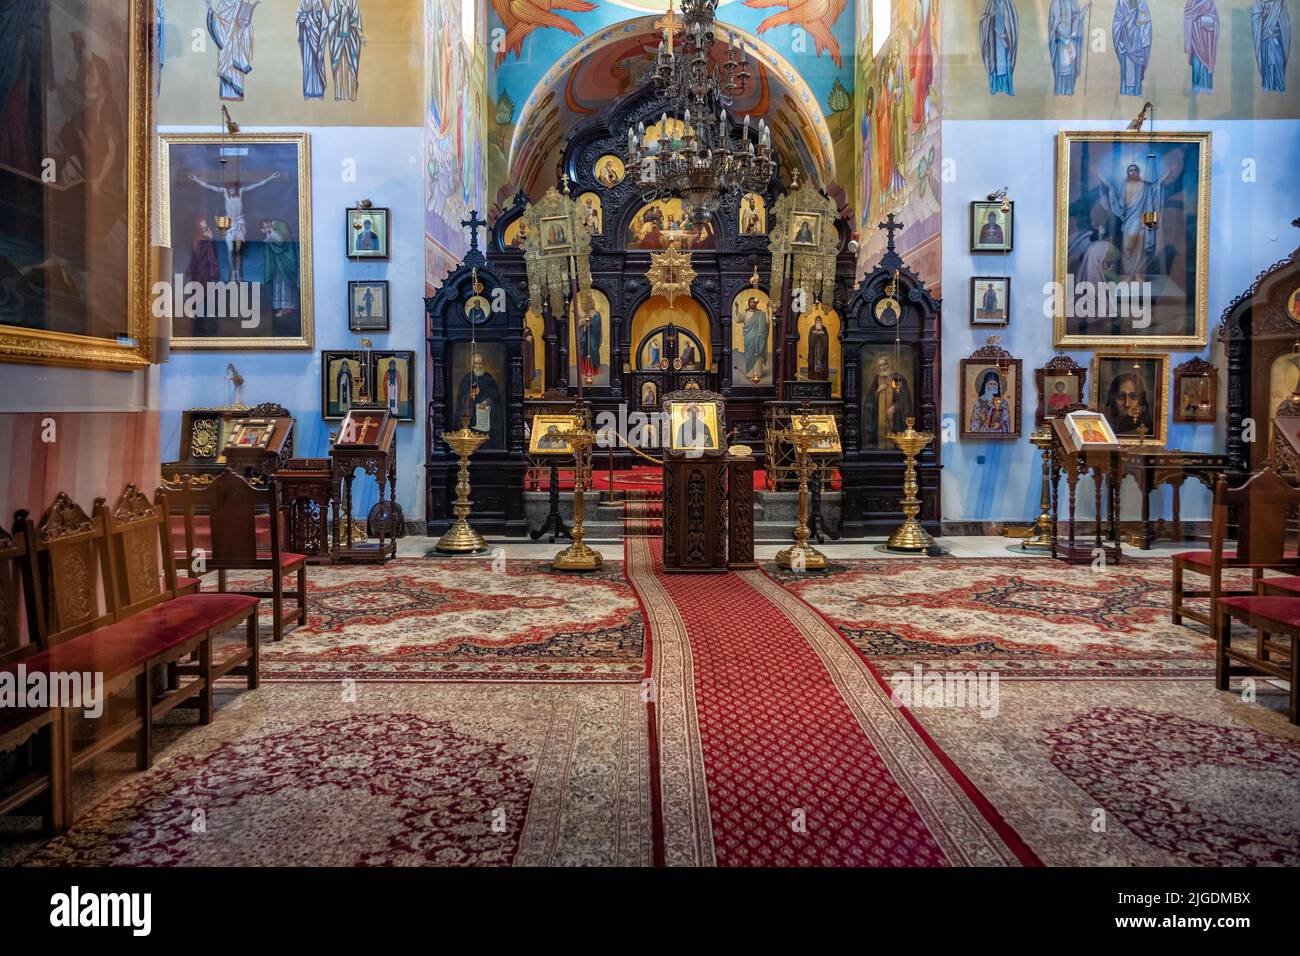 L'église orthodoxe Saint-Jean Climacus (en polonais : Cerkiew św. Jana Klimaka) intérieur avec des icônes religieuses historiques, quartier de Wola de la ville de Varsovie à Polan Banque D'Images